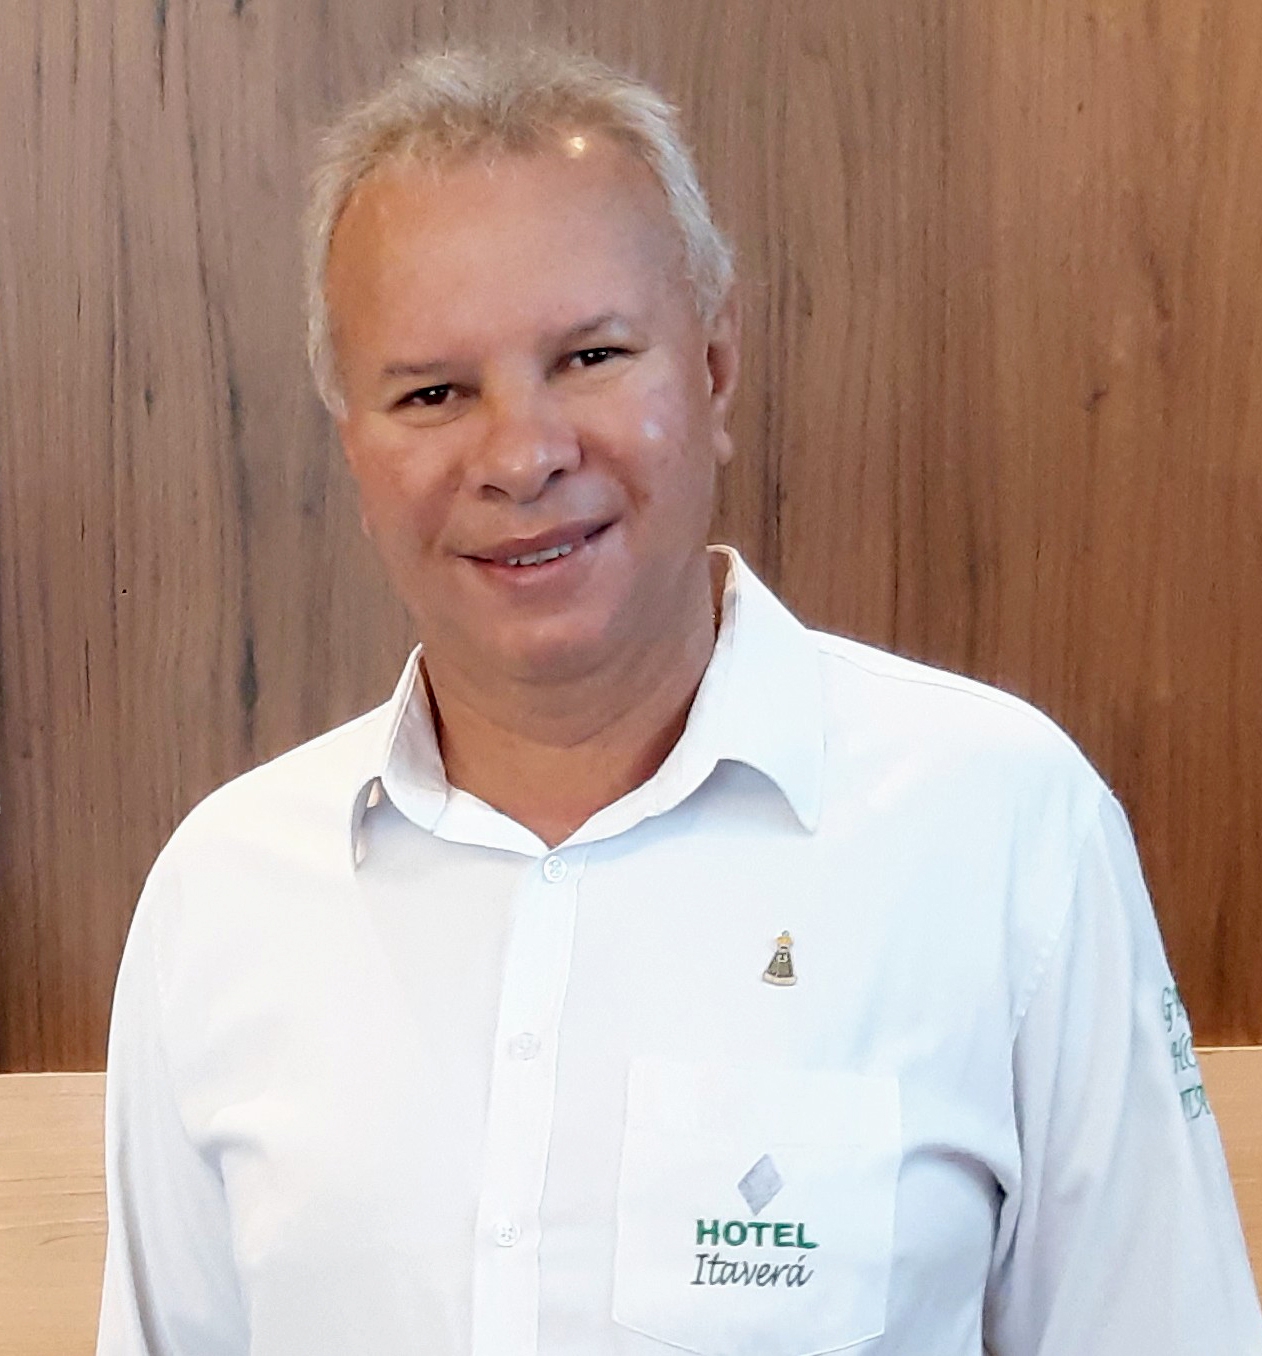 Cláudio Itaverá, empresário do setor hoteleiro e construção civil